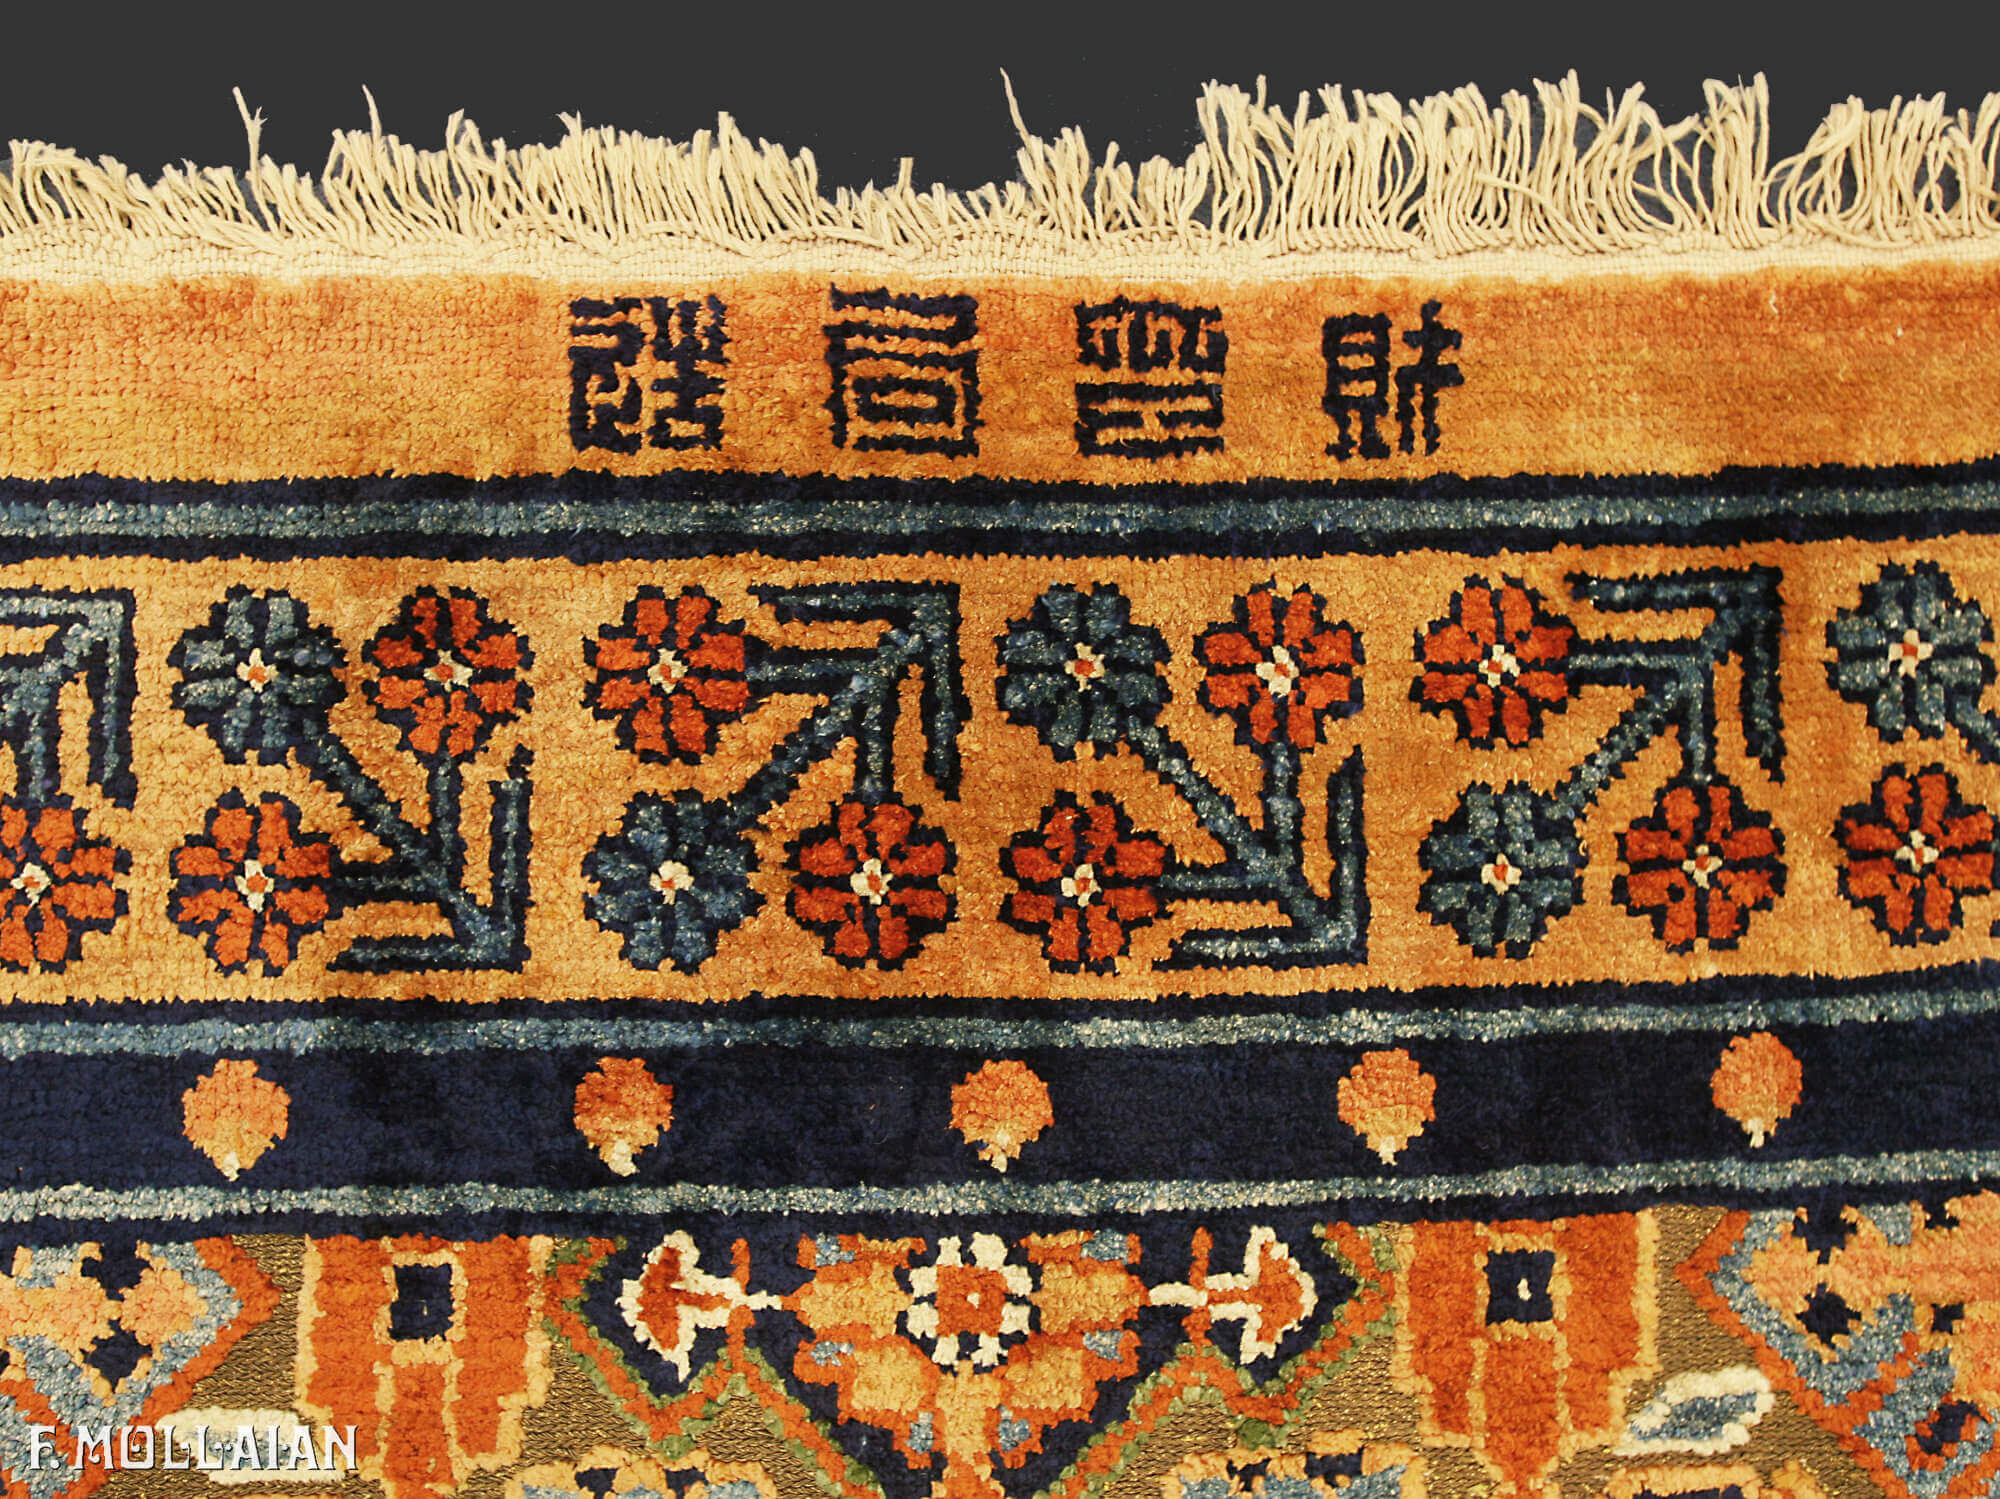 Una rara Alfombra antigua del Palacio Imperial de China de seda y metal n°:79466225